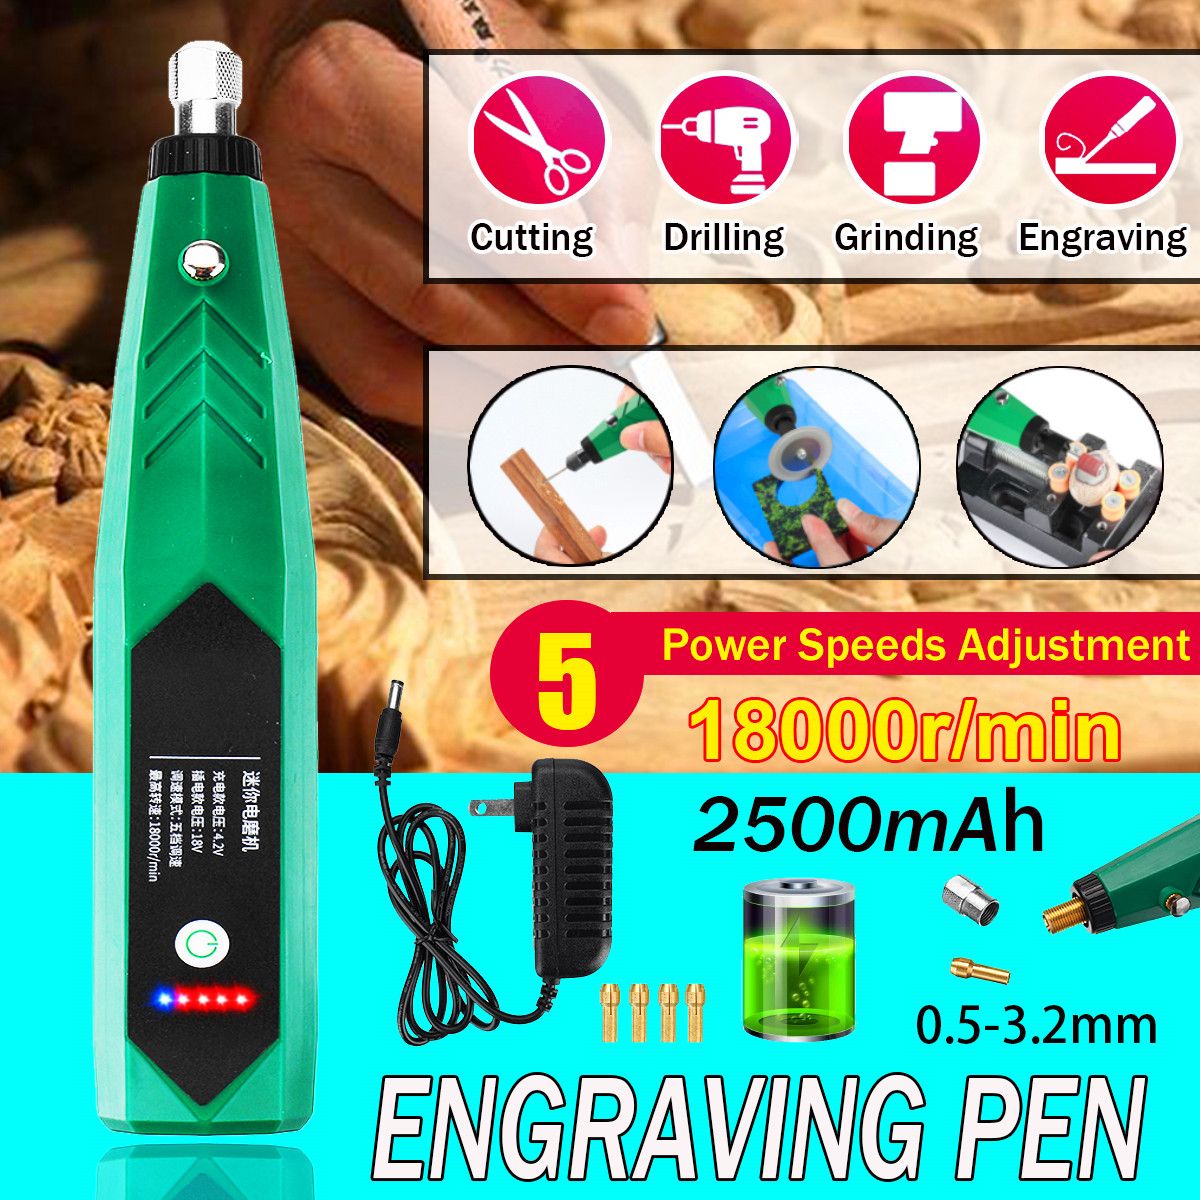 6PCS-2500mAh-18000rMin-Electric-Engraving-Pen-Set-Metal-Carving-Marking-Machine-1748511